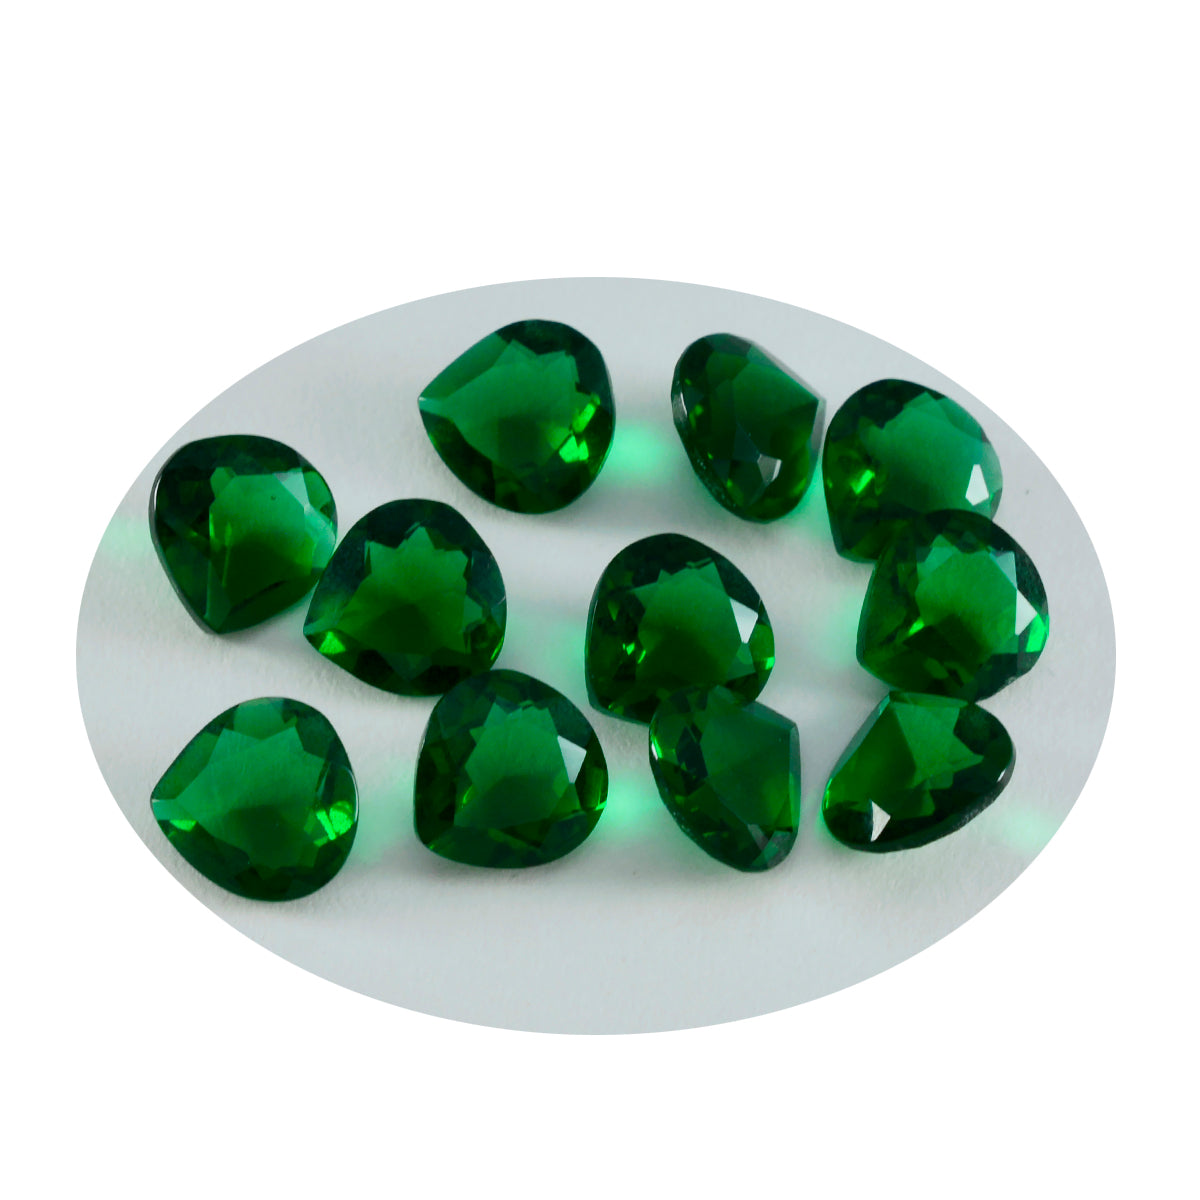 riyogems 1шт зеленый изумруд cz ограненный 4x4 мм в форме сердца отличное качество свободный камень